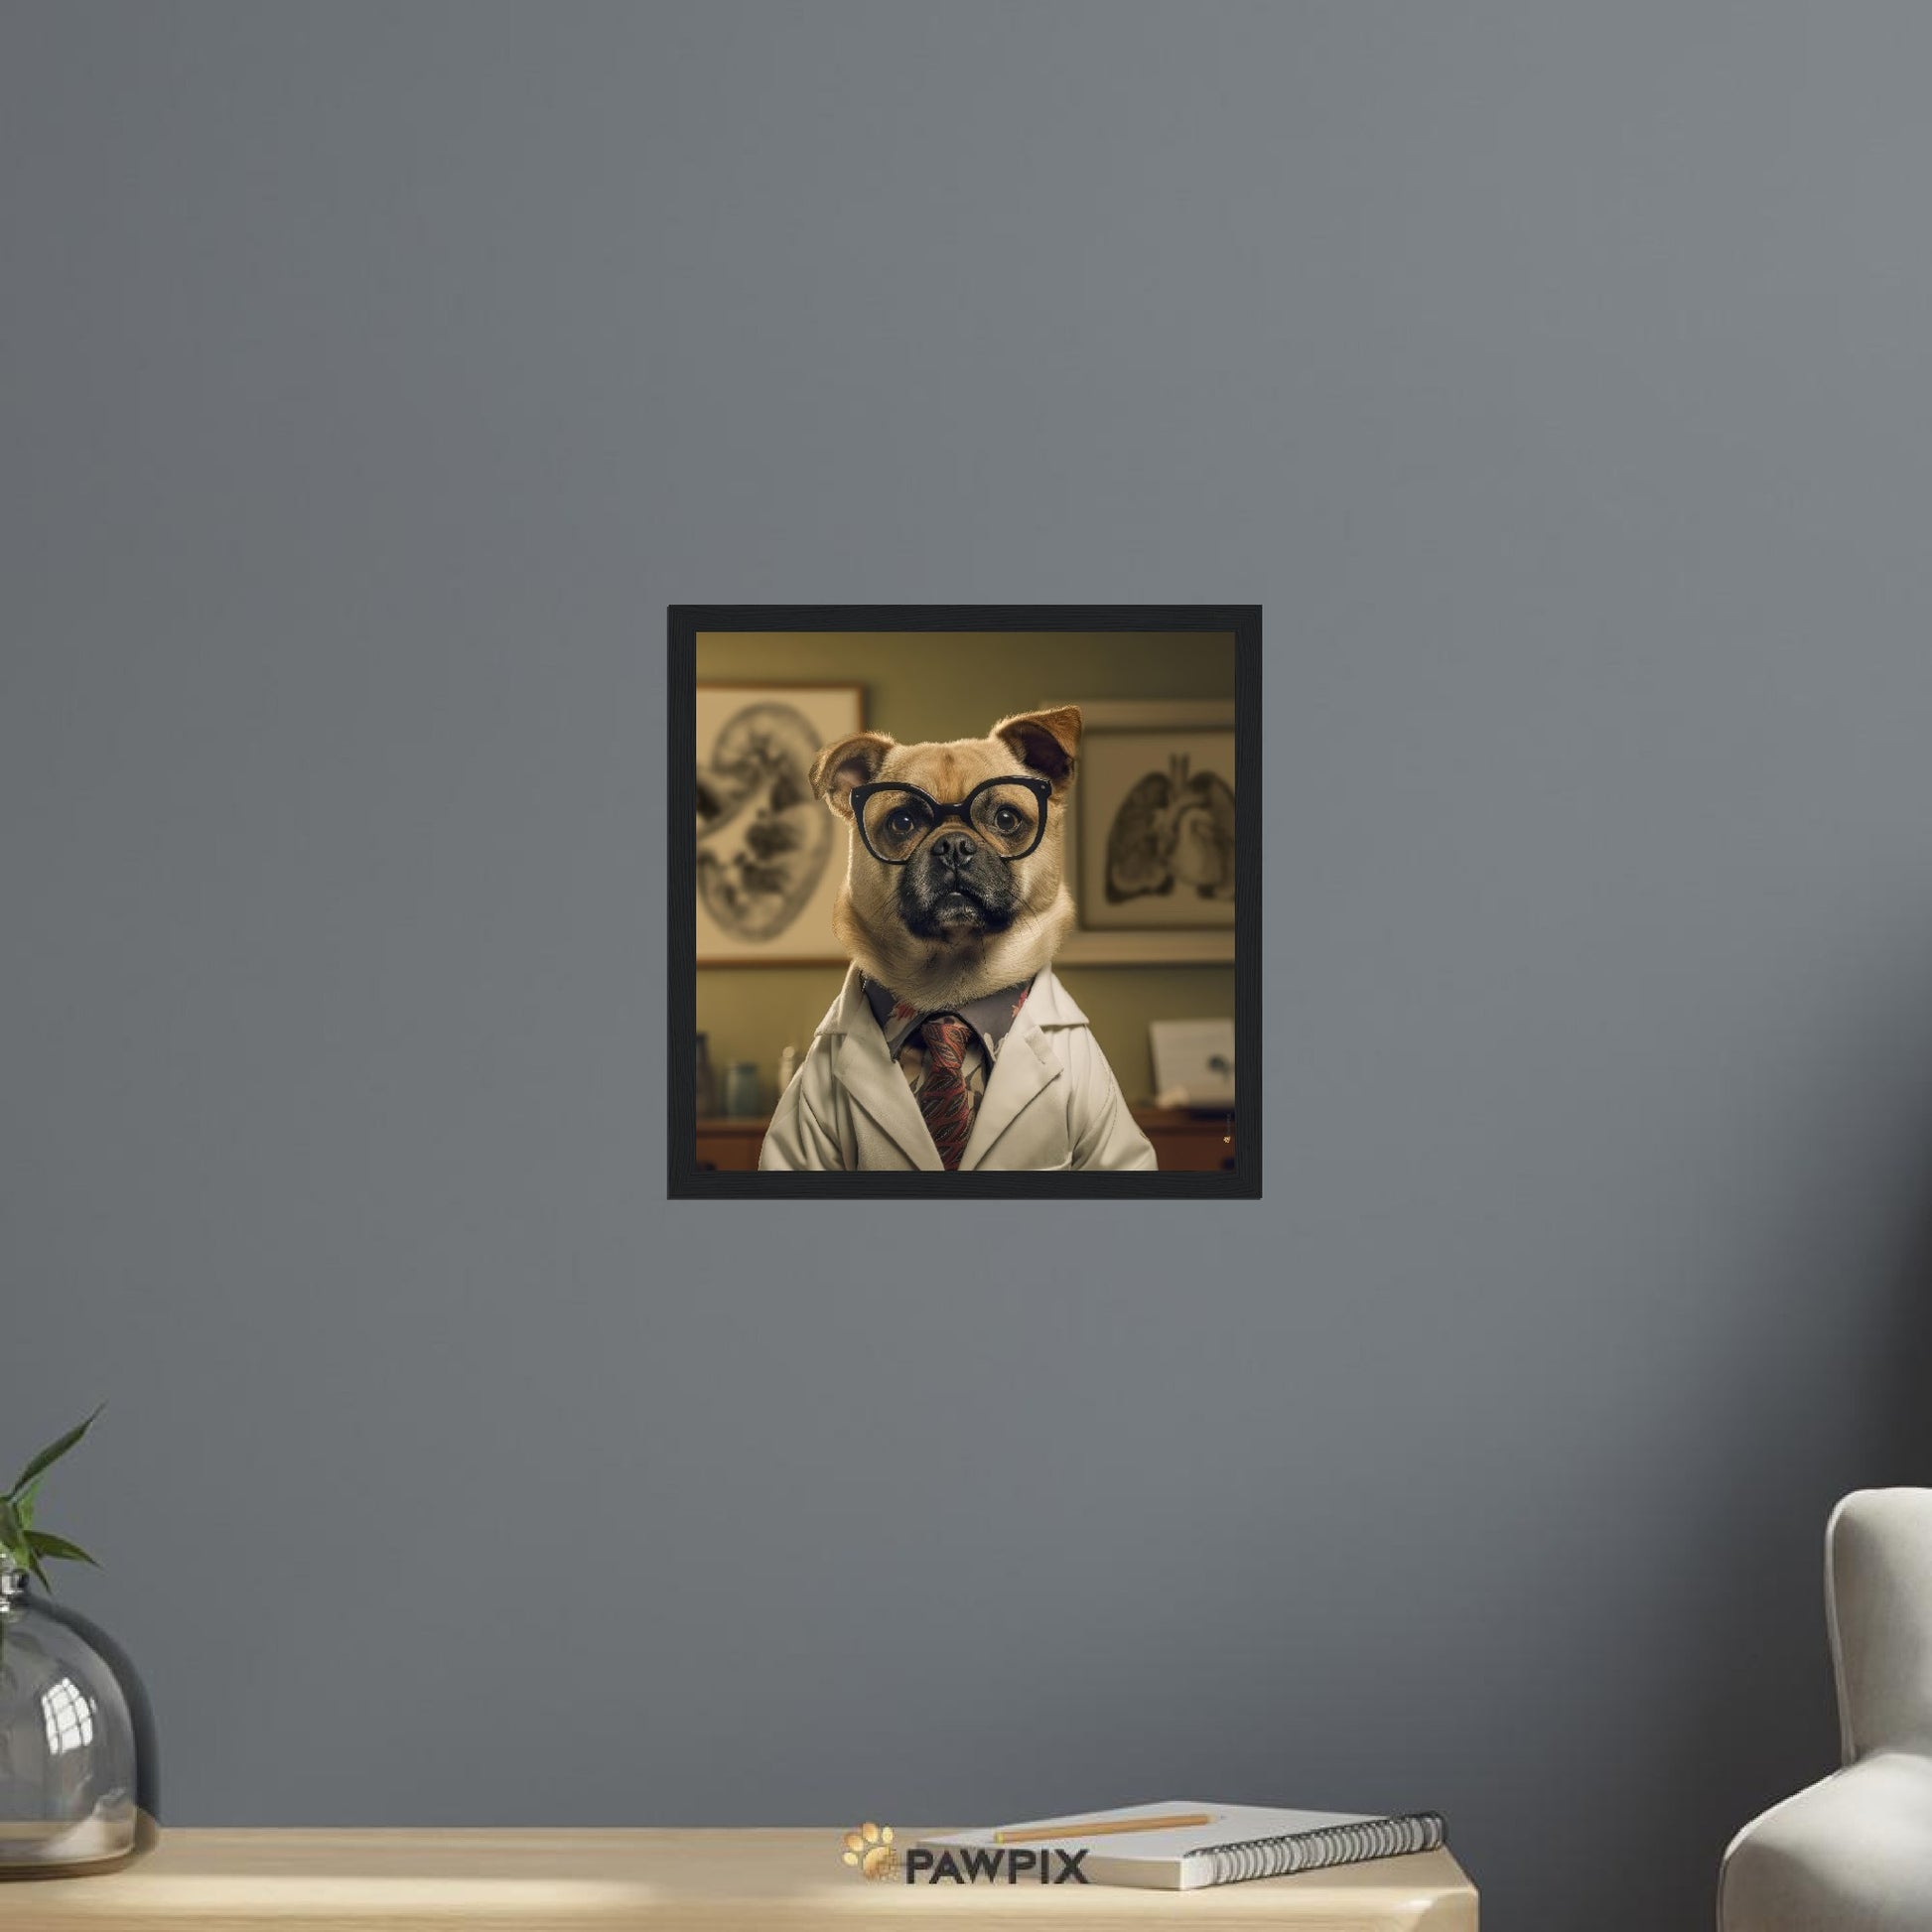 Hund im Doc Dog MH001-Stil, gedruckt auf Premium-Poster mit Metallrahmen. Entdecke bei PawPix.de, Haustierporträt, hochwertig, Wallart, Ready to Hang und schnelle Lieferung.